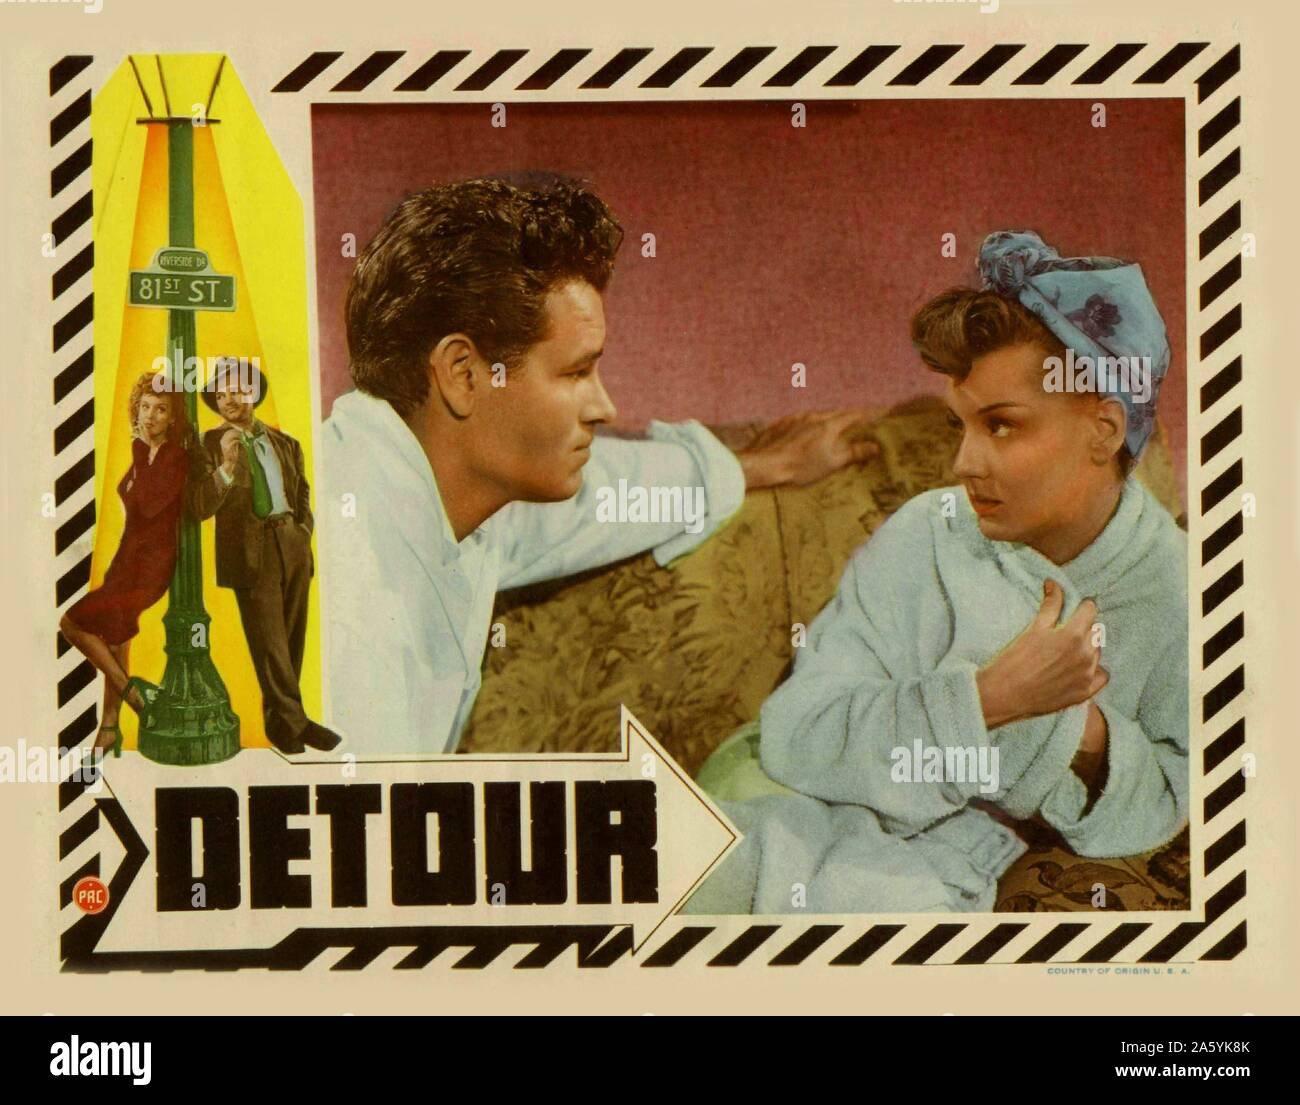 Detour Year: 1945 USA Director: Edgar G. Ulmer Tom Neal, Ann